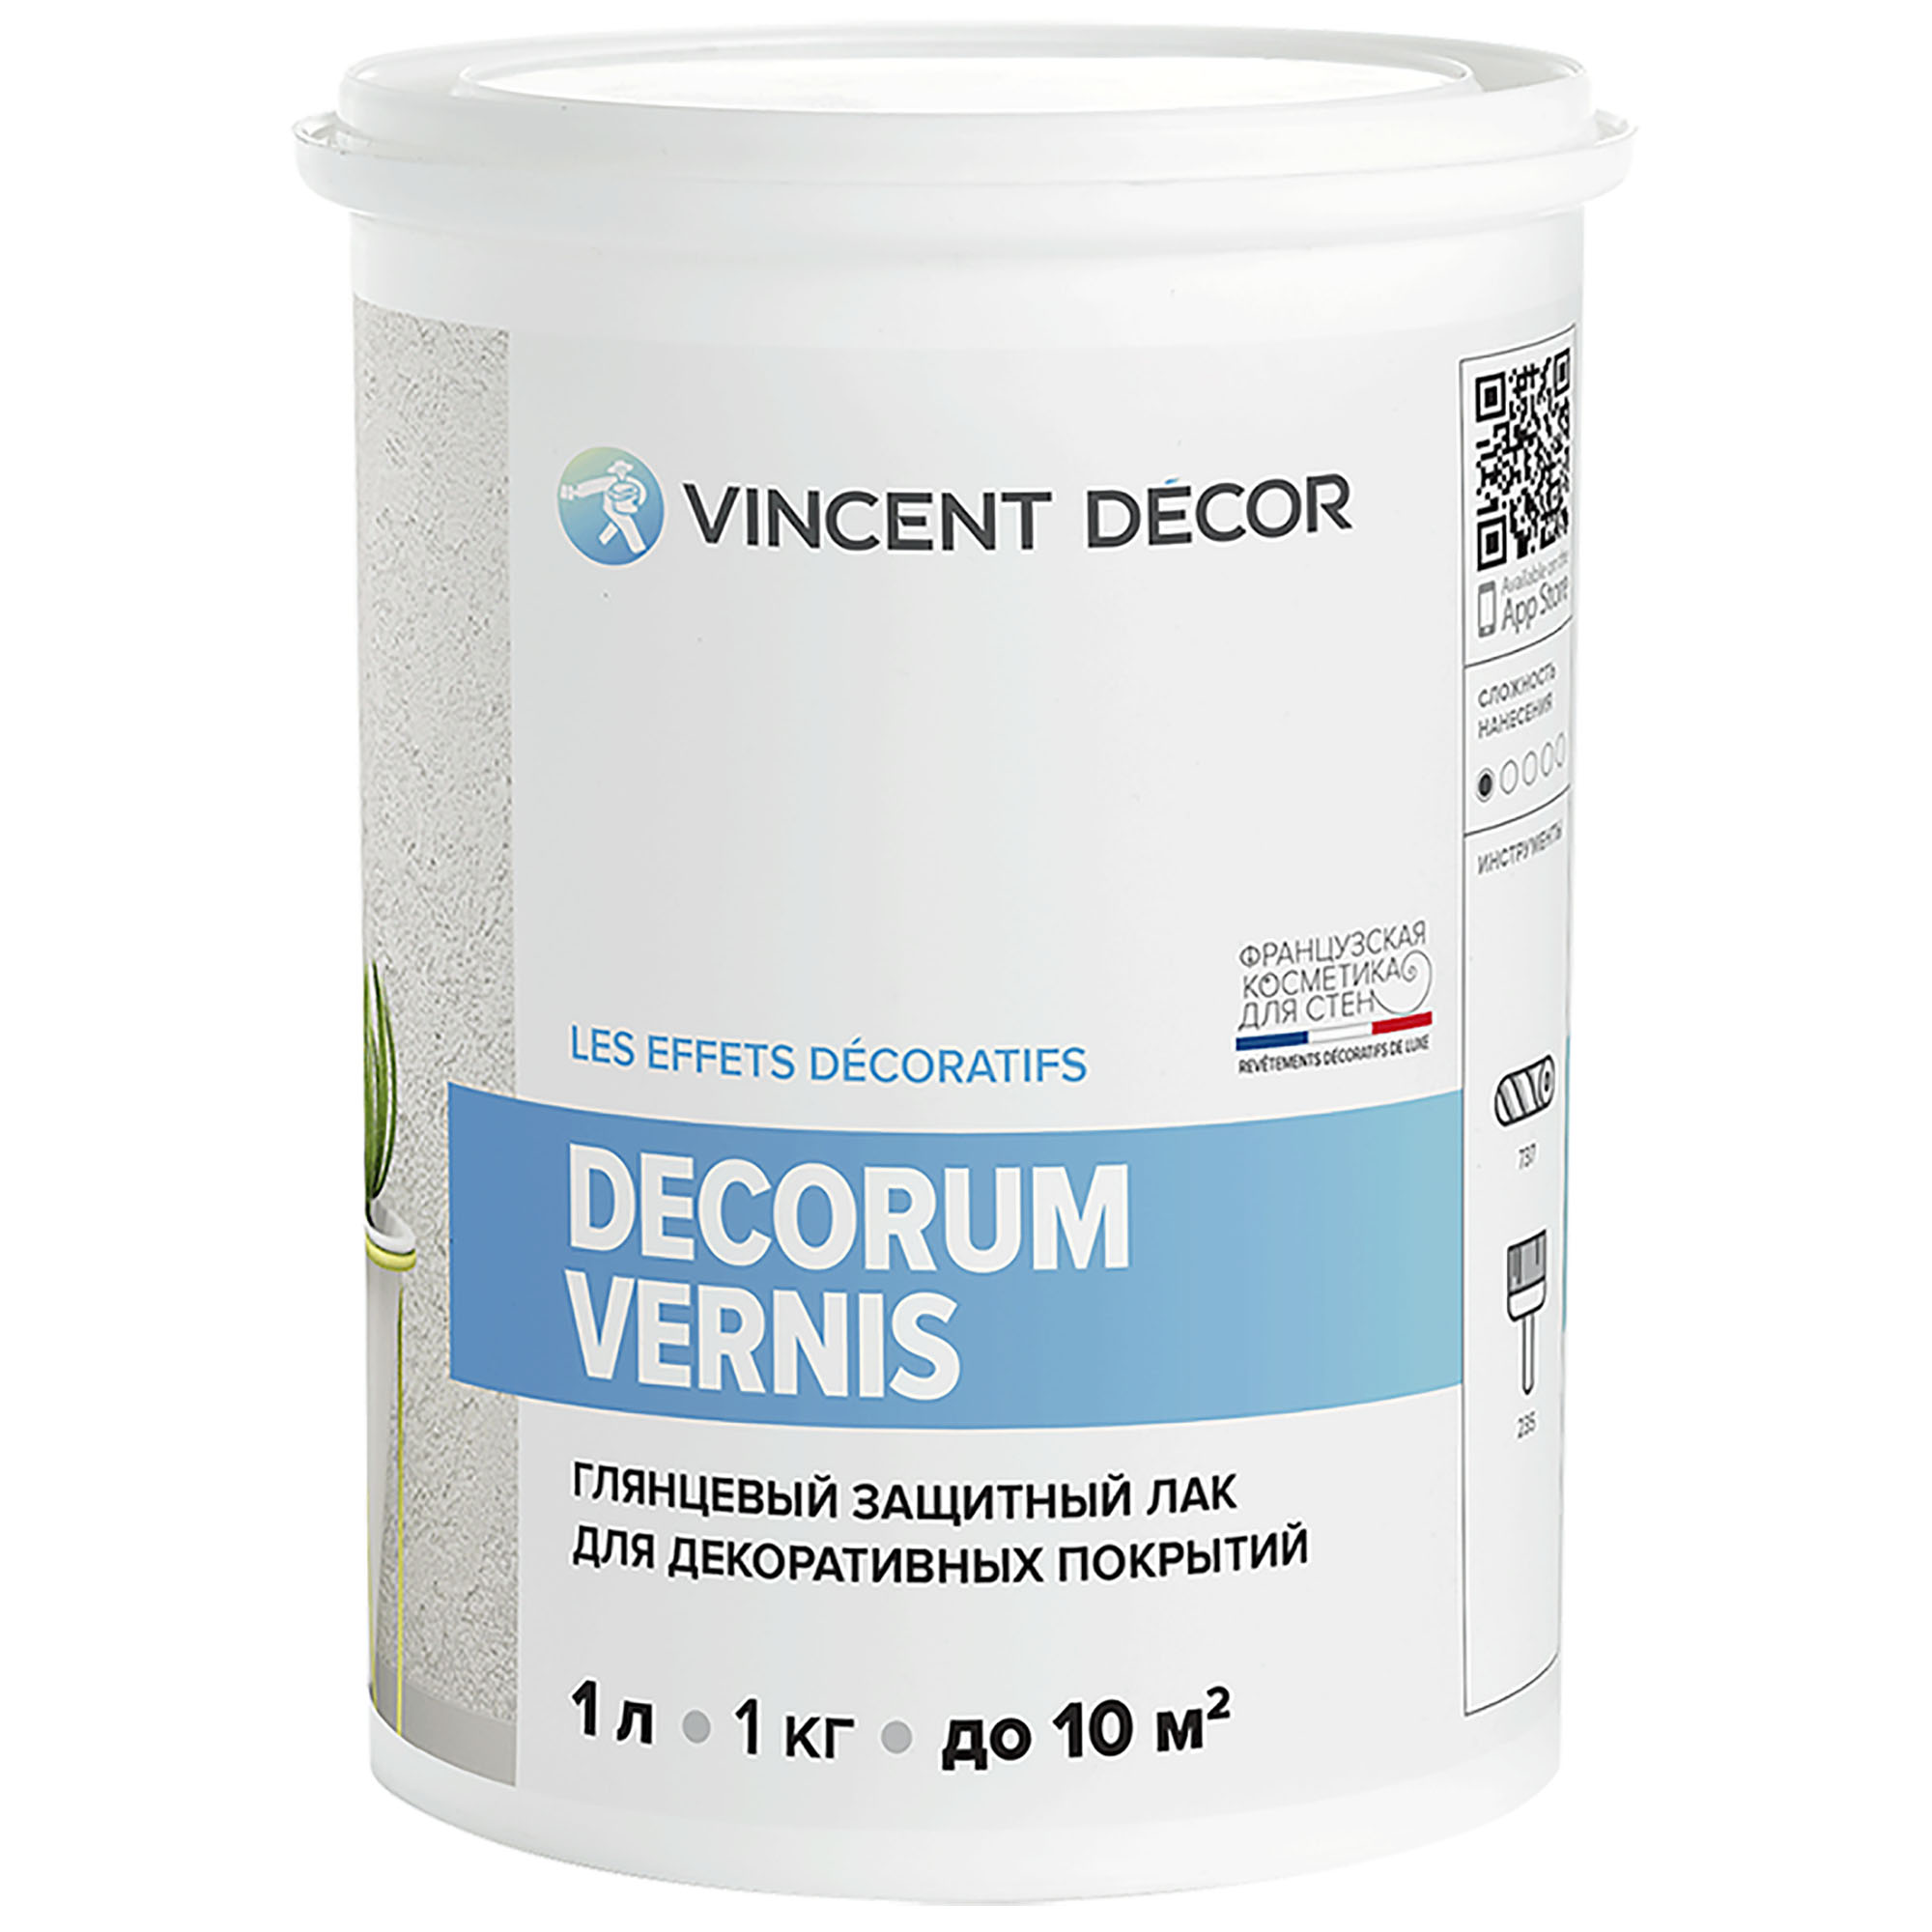 Лак защитный для декоративных покрытий Vincent Decor Decorum Vernis глянцевый 1 л vincent decor decorum vernis бесцветный глянцевая 1 л